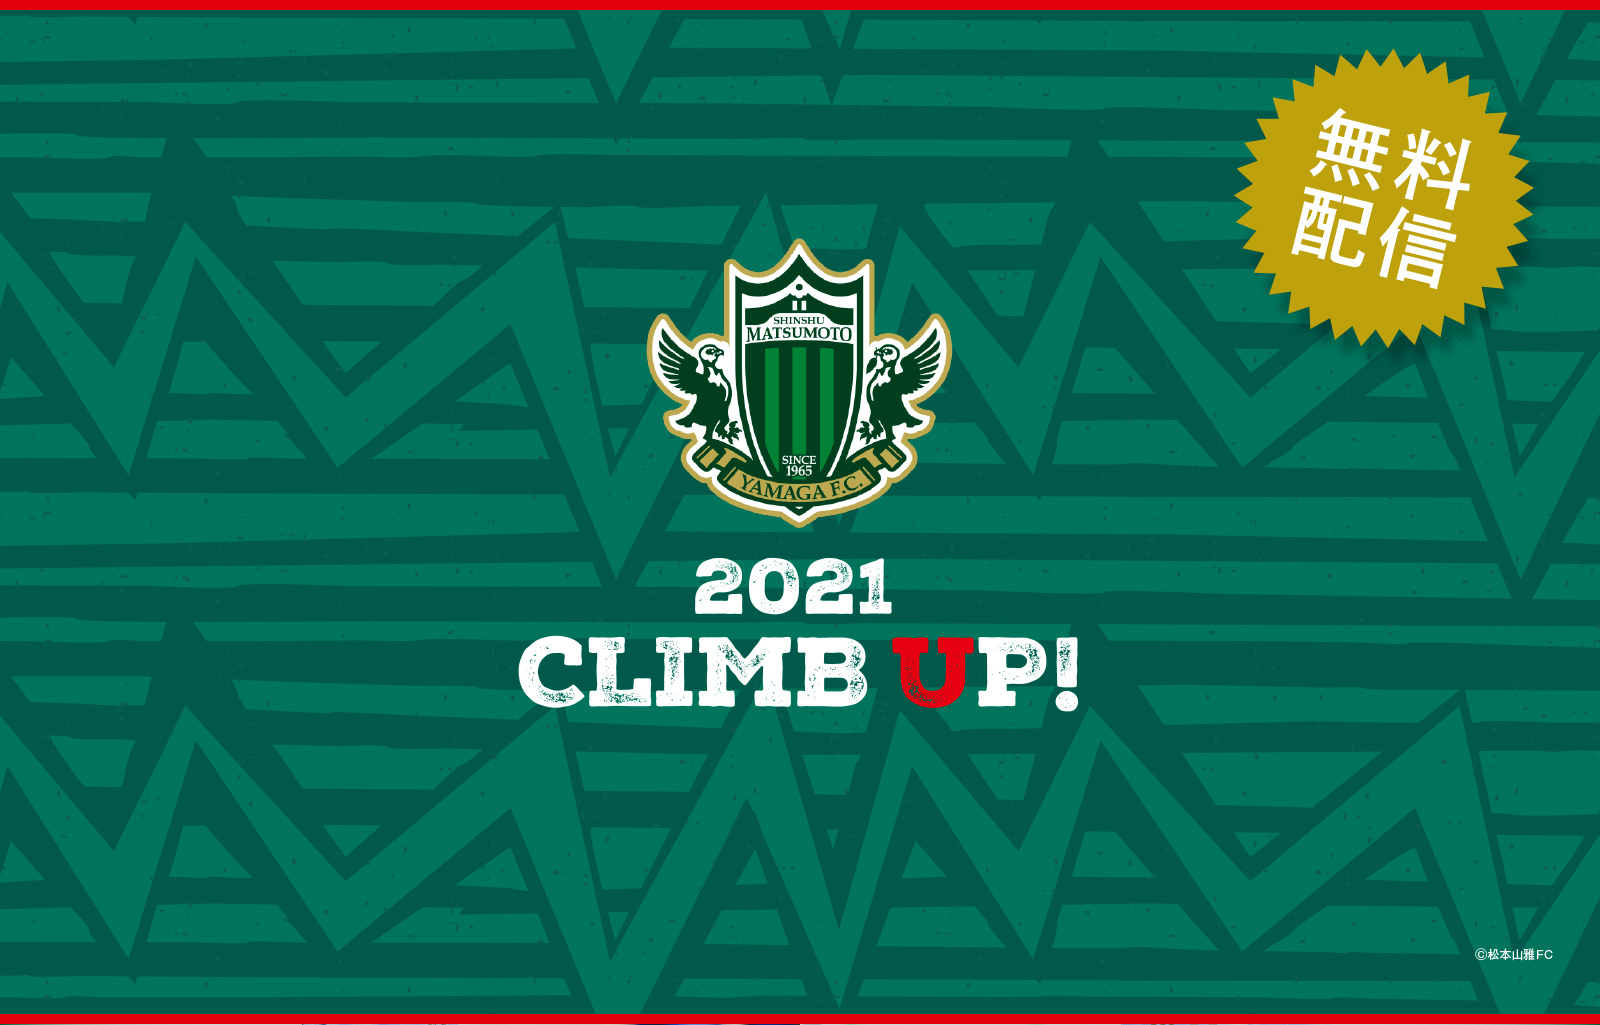 壁紙】2021ユニフォーム「CLIMB UP!」 ※無料 | 松本山雅FC｜ヤマガ